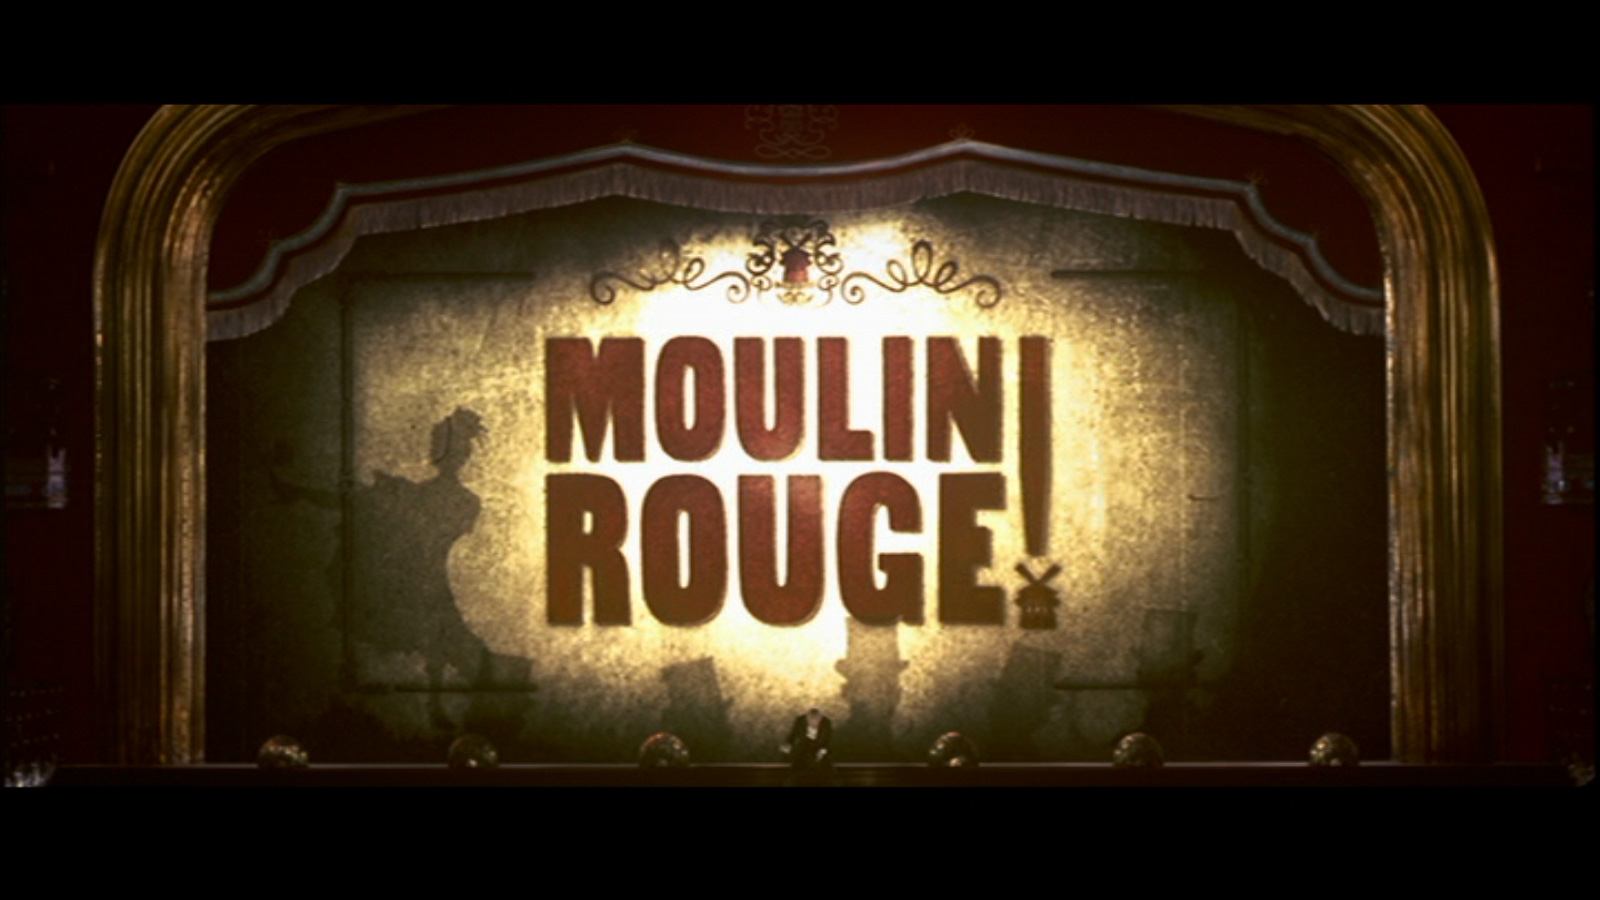 6 Kbytes, V - Moulin Rouge Background , HD Wallpaper & Backgrounds